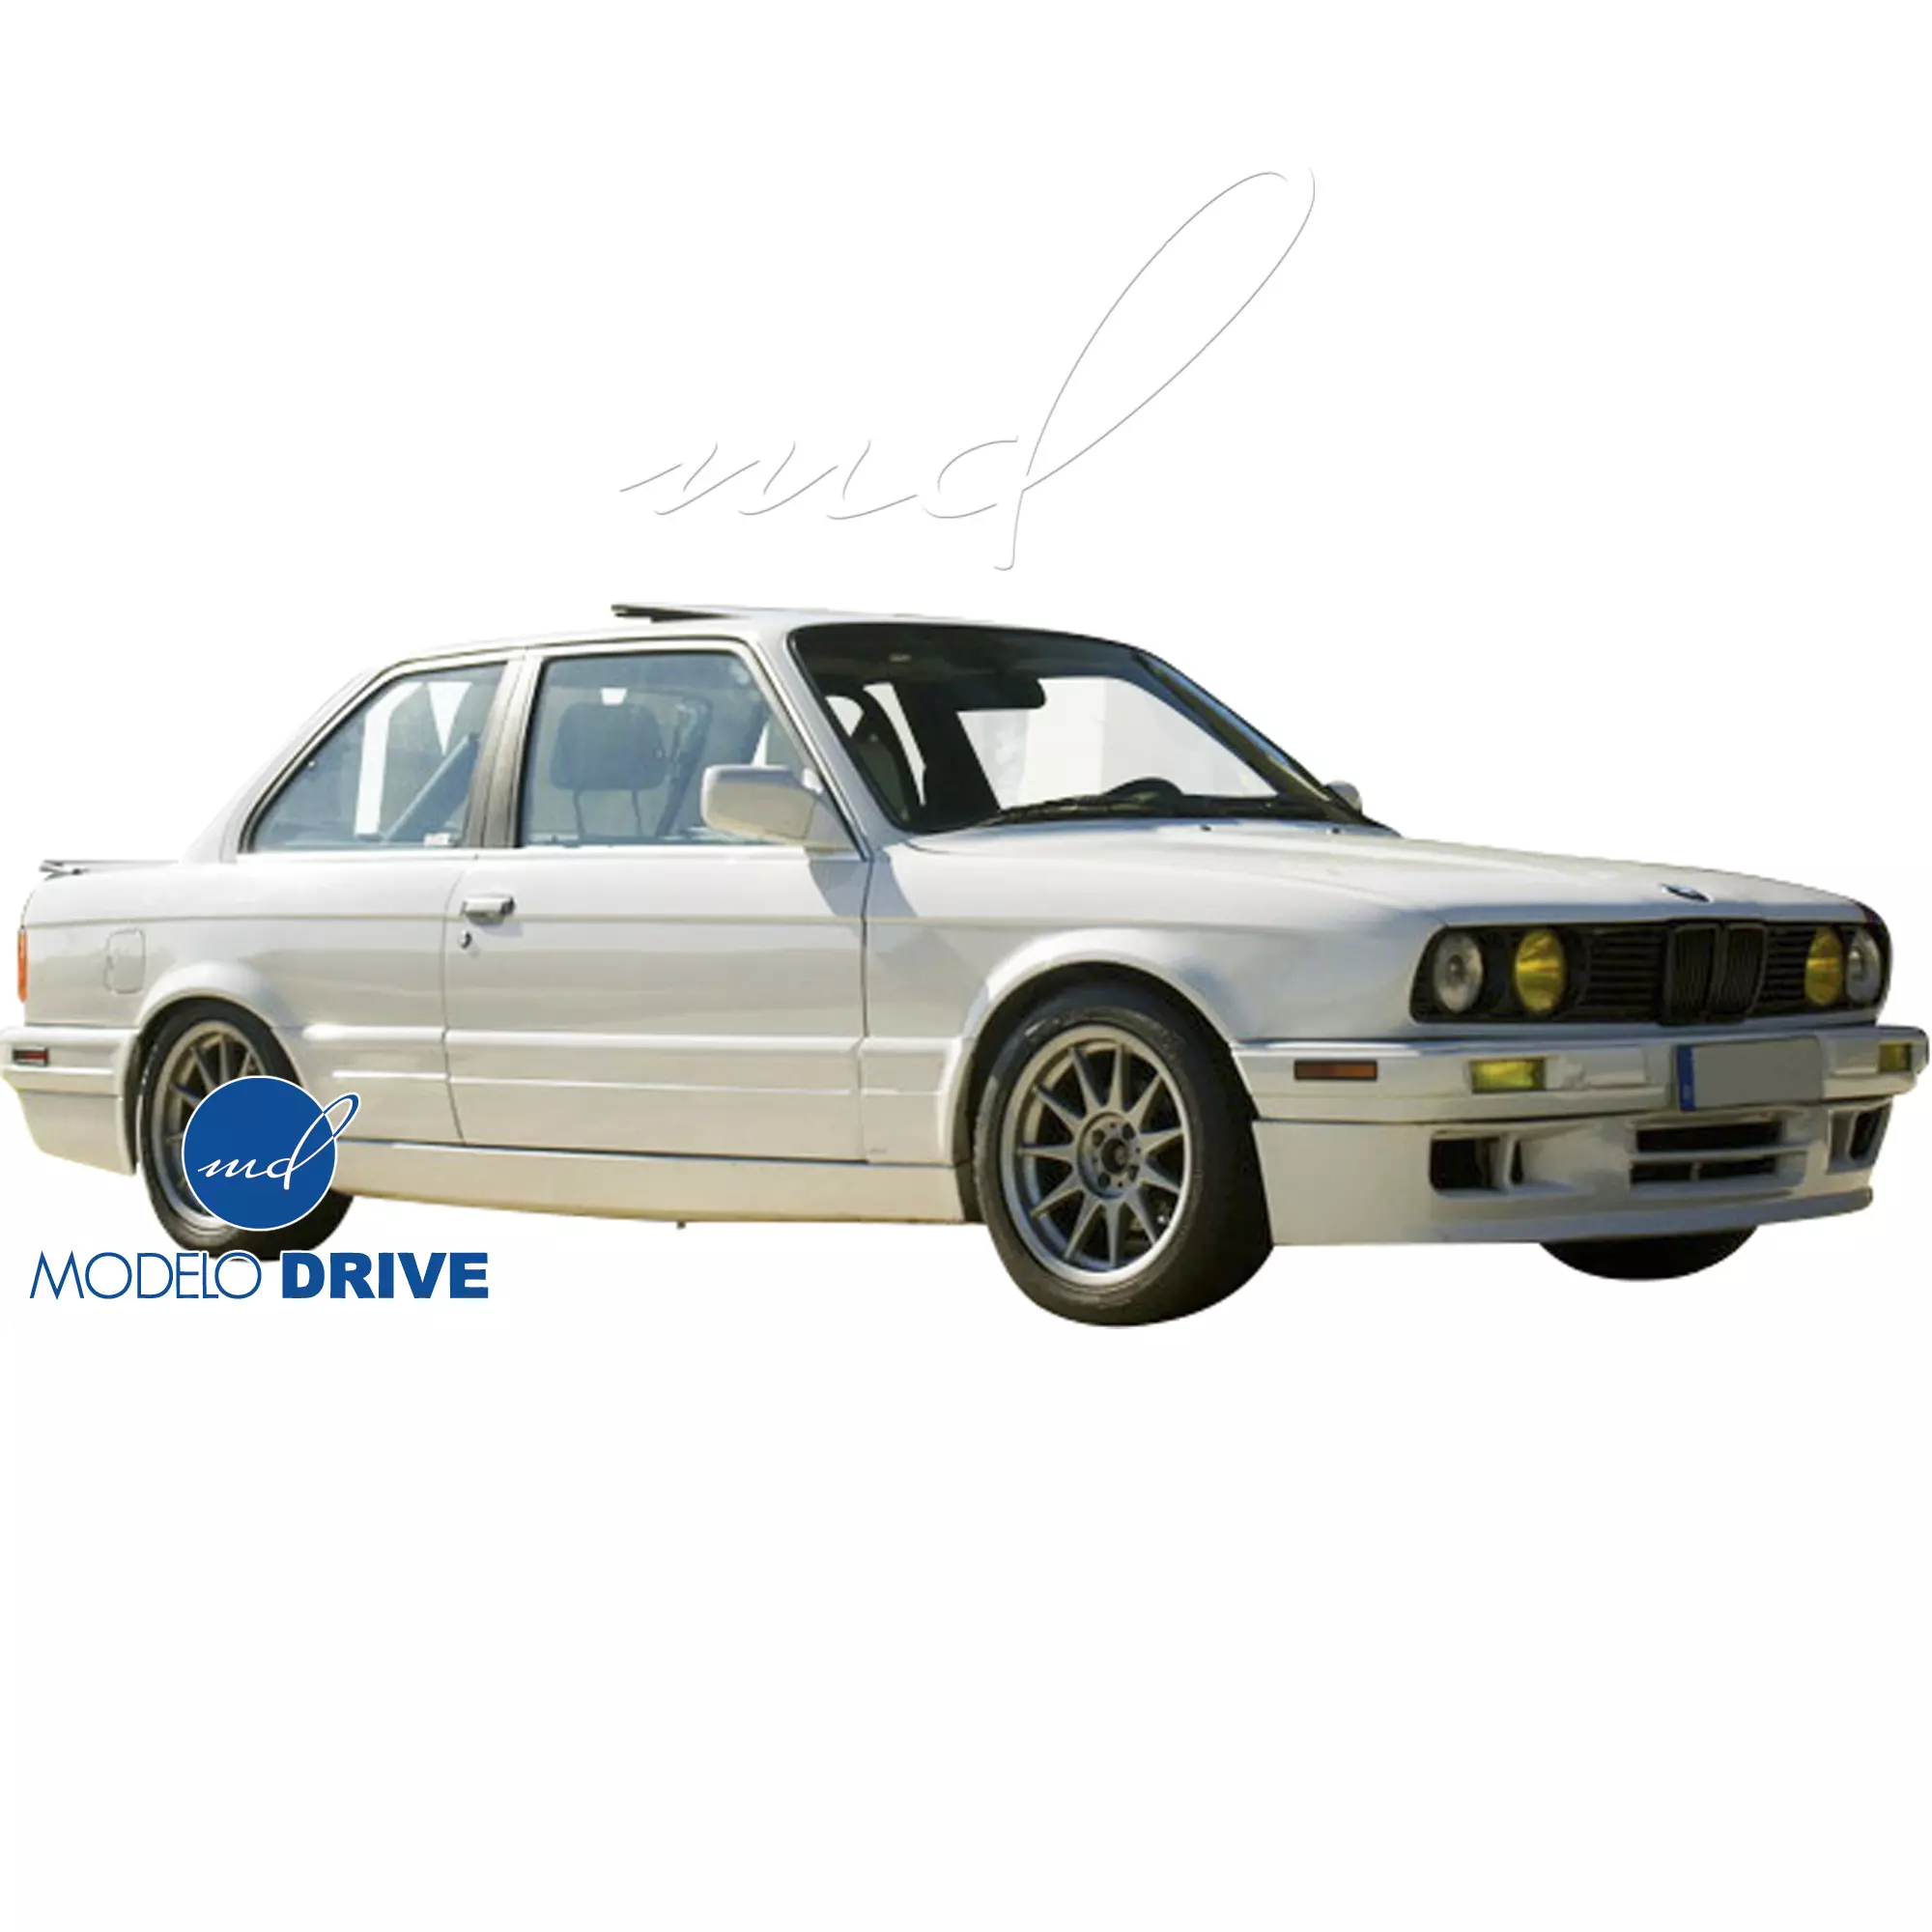 ModeloDrive FRP MTEC Side Skirts > BMW 3-Series 318i 325i E30 1984-1991 > 2dr Coupe - Image 8